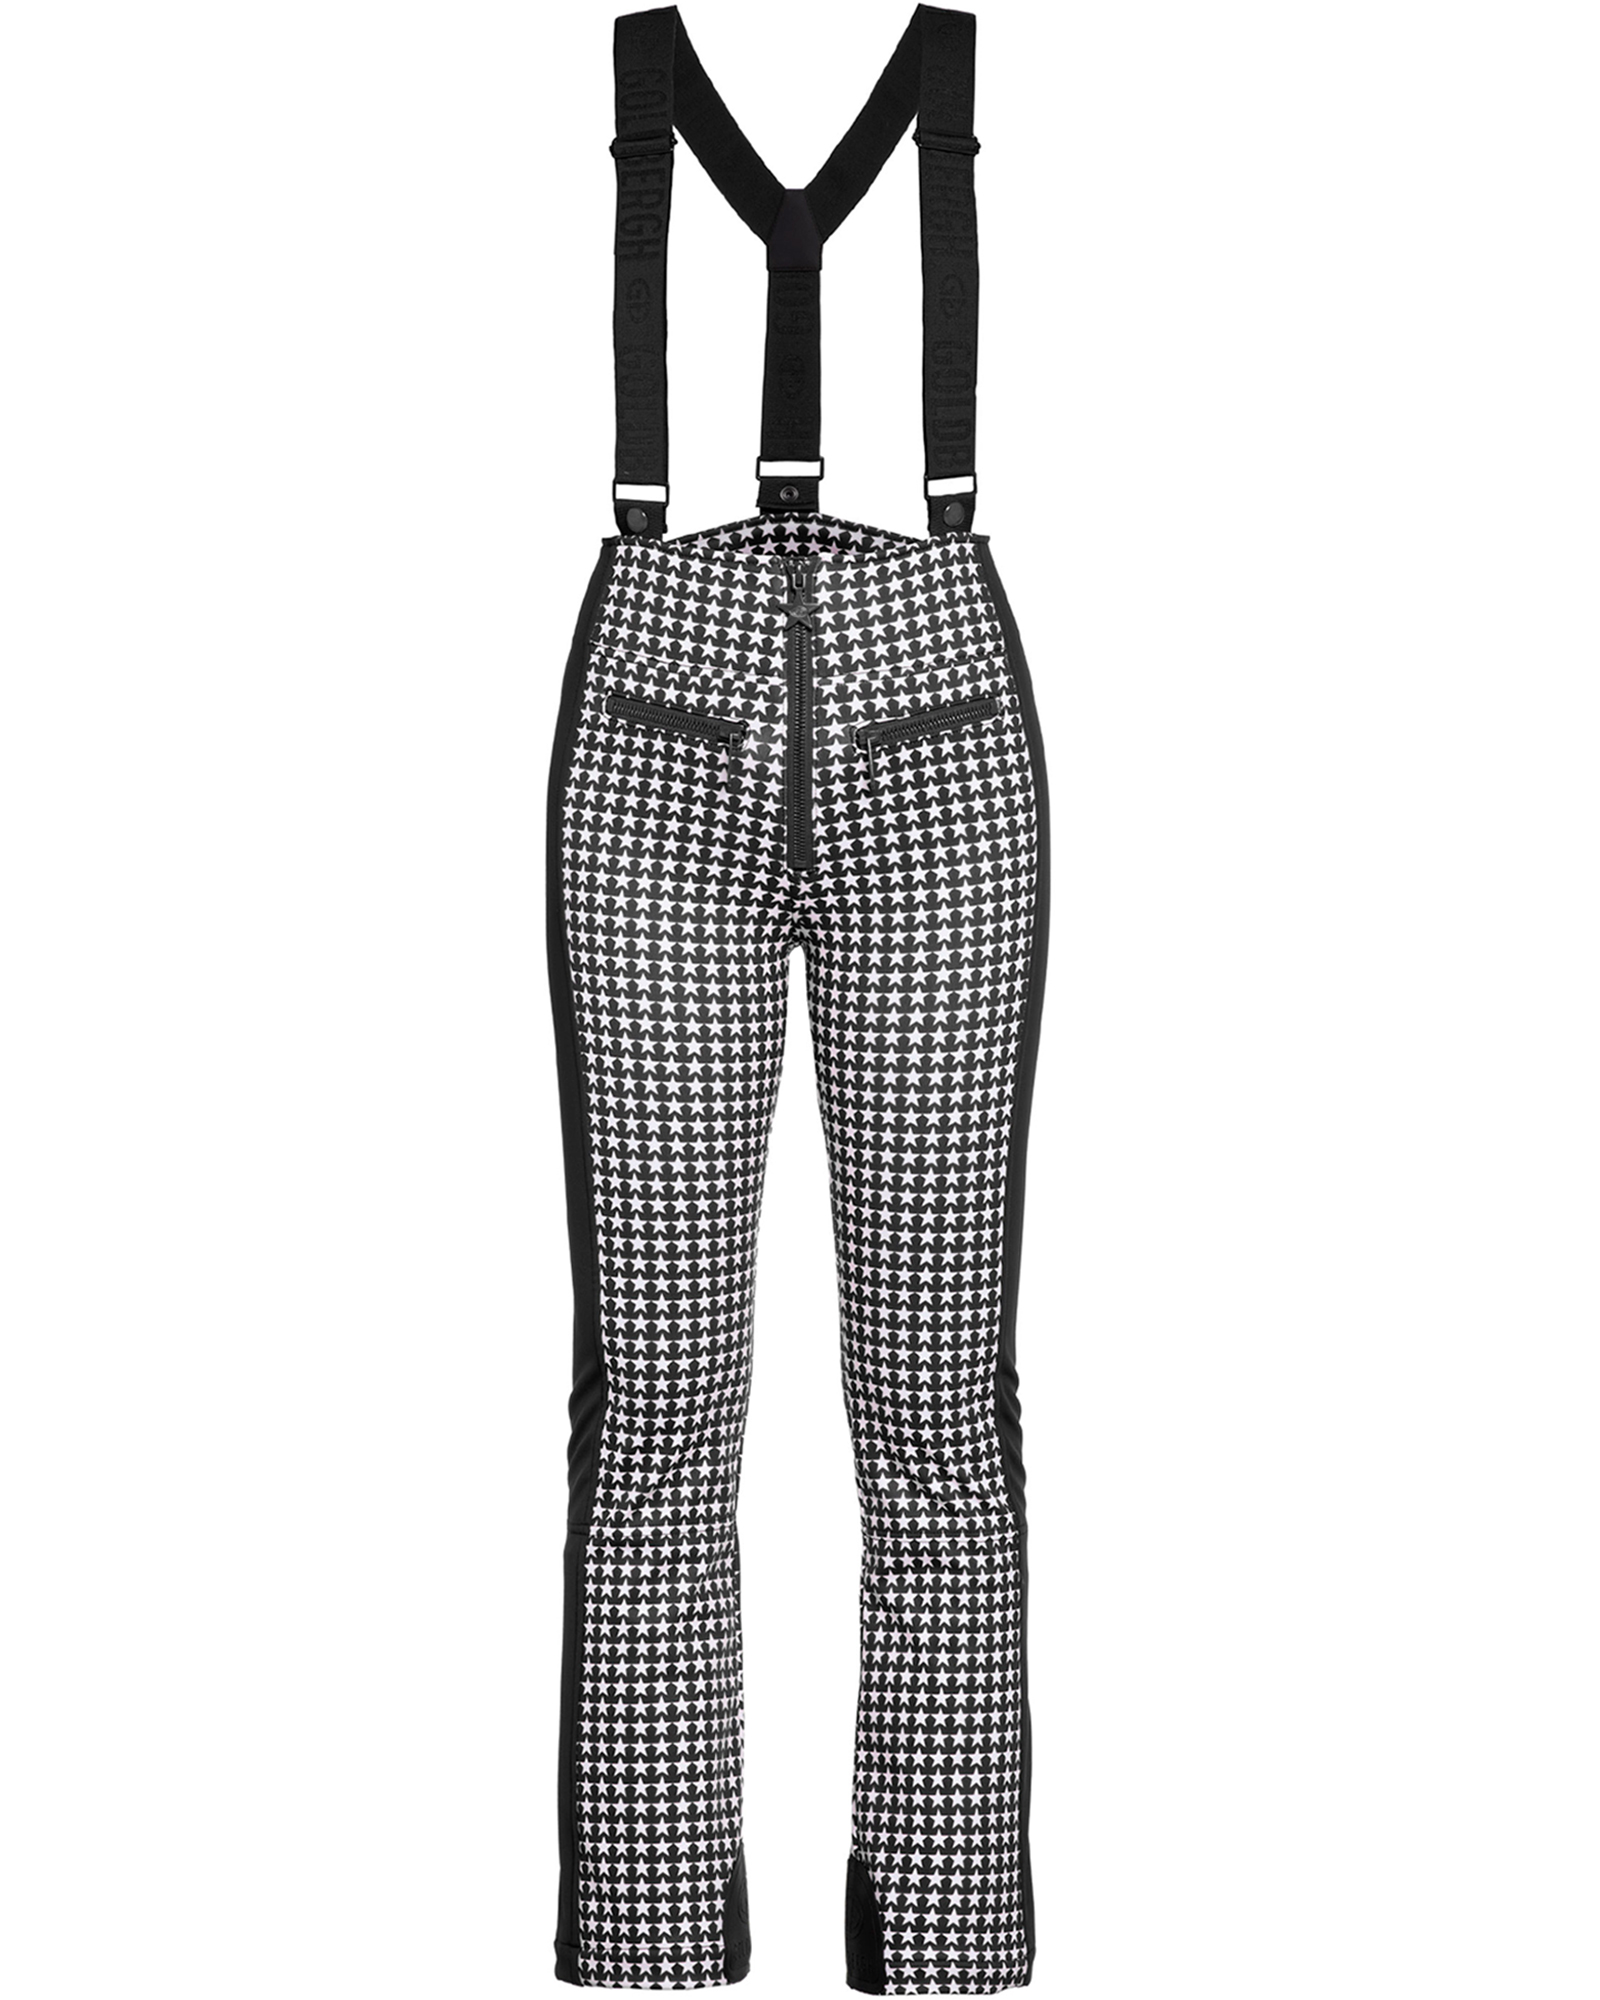 Goldbergh Women’s Starski Stretch Pants - Black/White Check 10